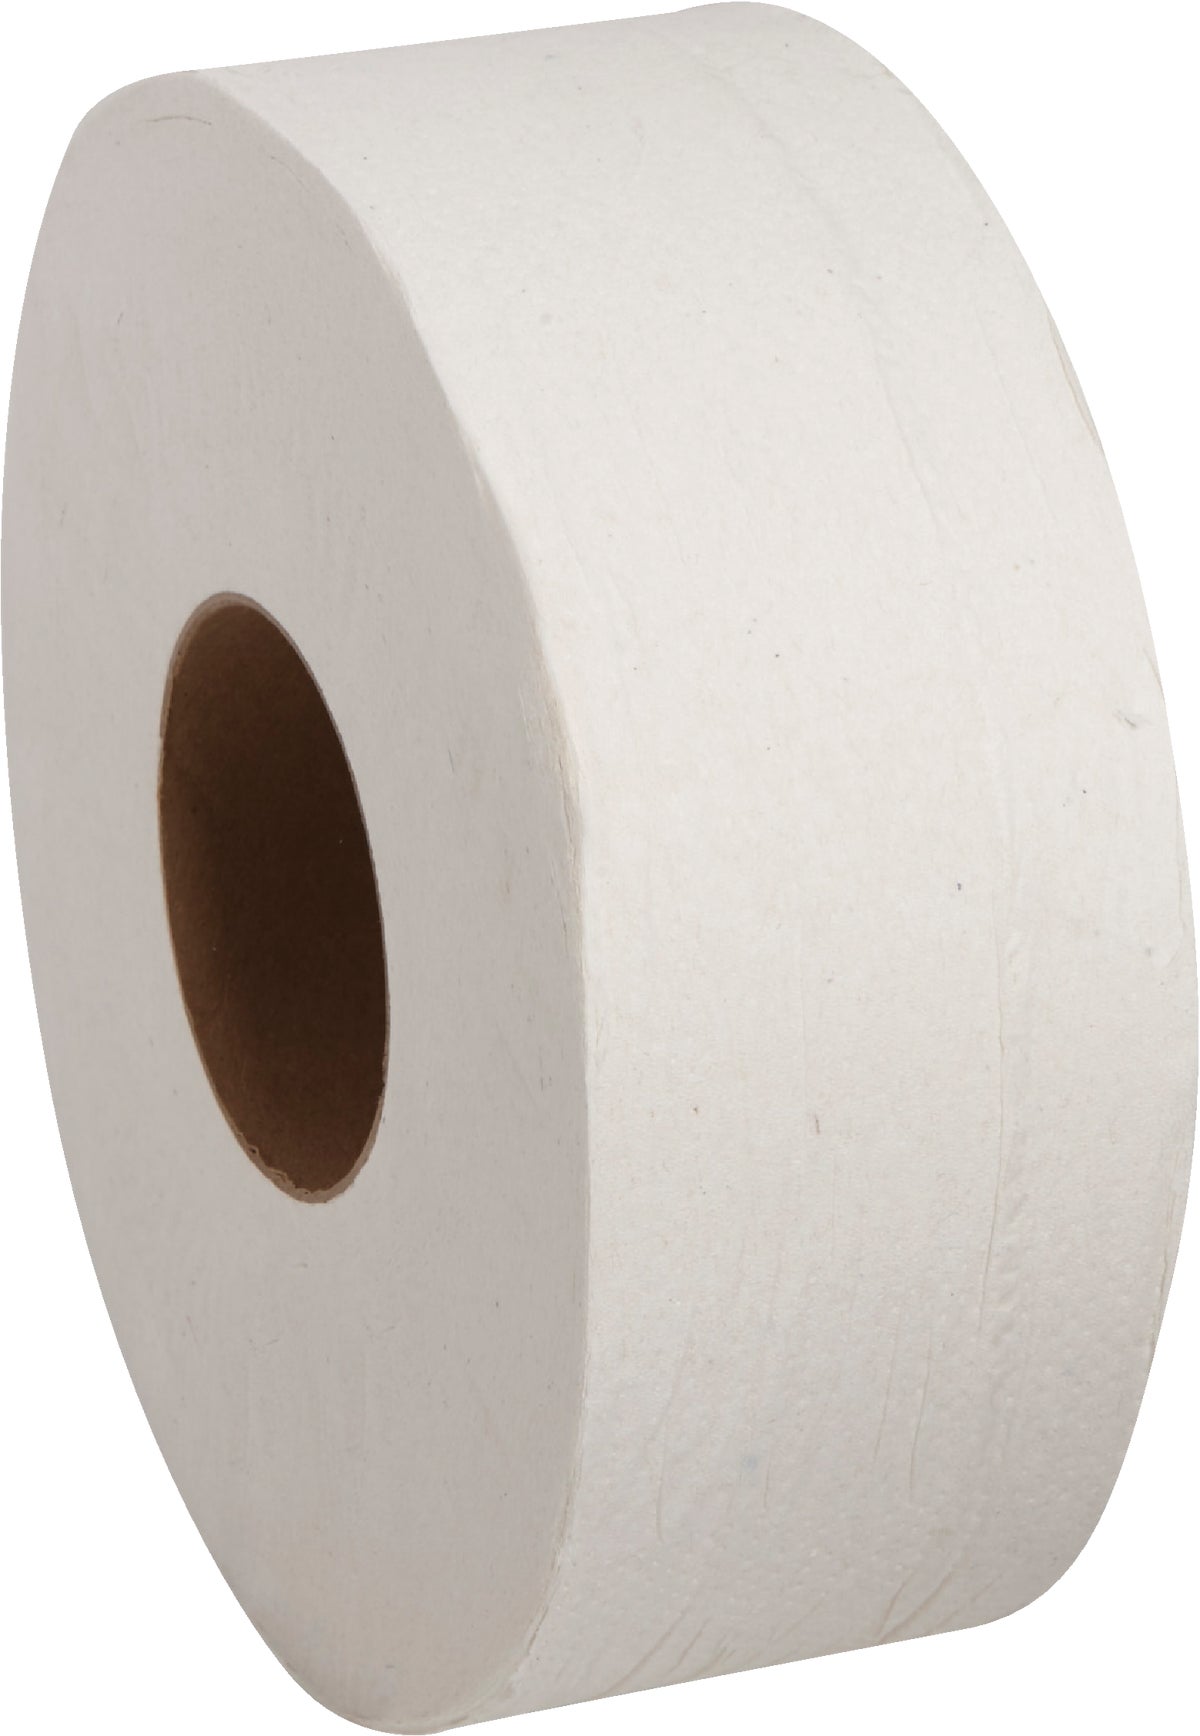 Buy Nova Commercial Dispenser Jumbo Roll Toilet Paper White